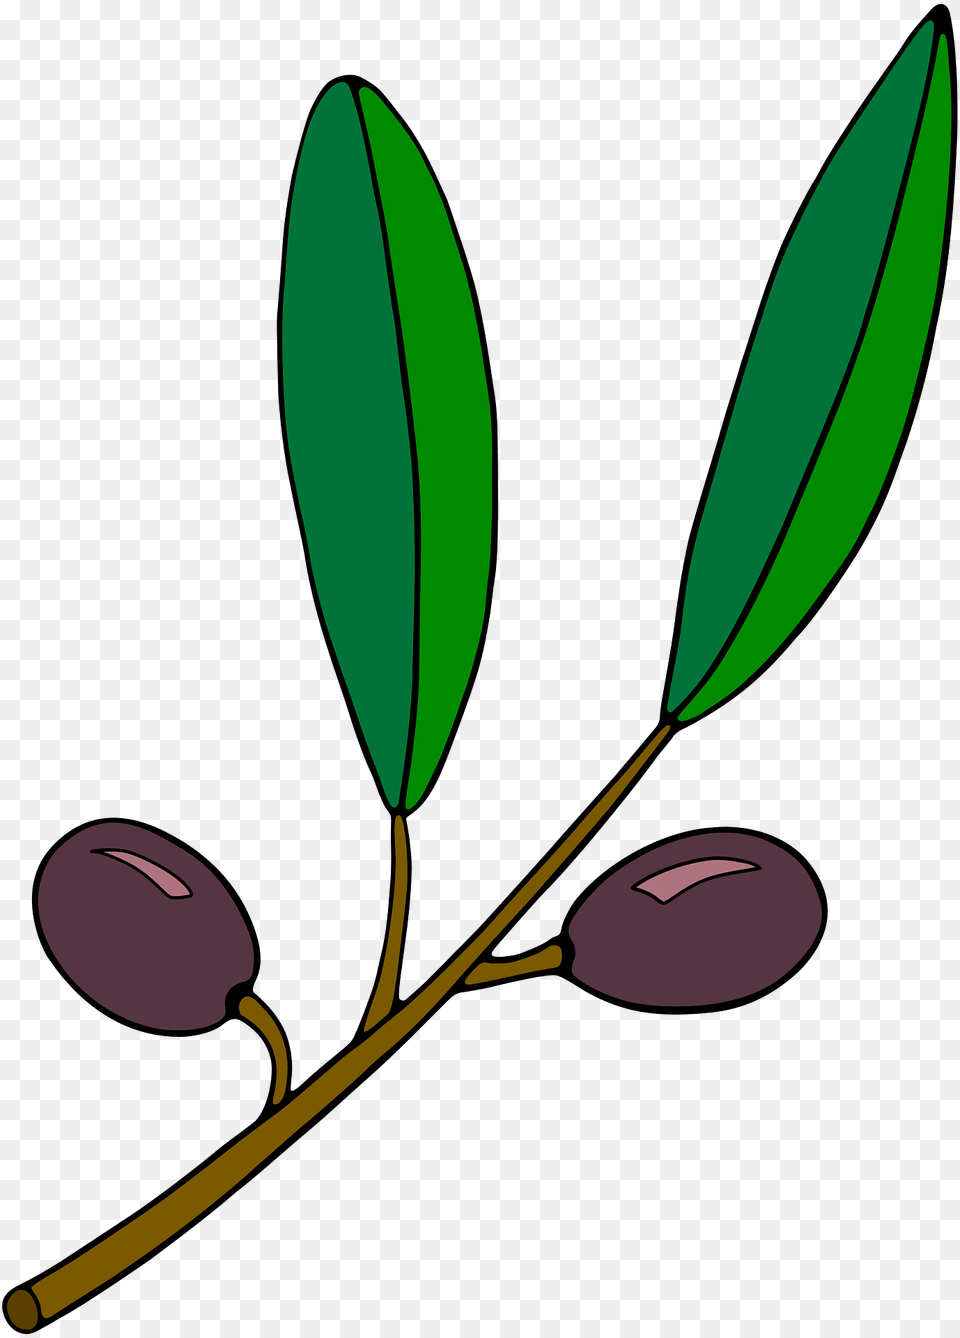 Black Olives On The Vine Clipart, Flower, Plant, Leaf, Bud Png